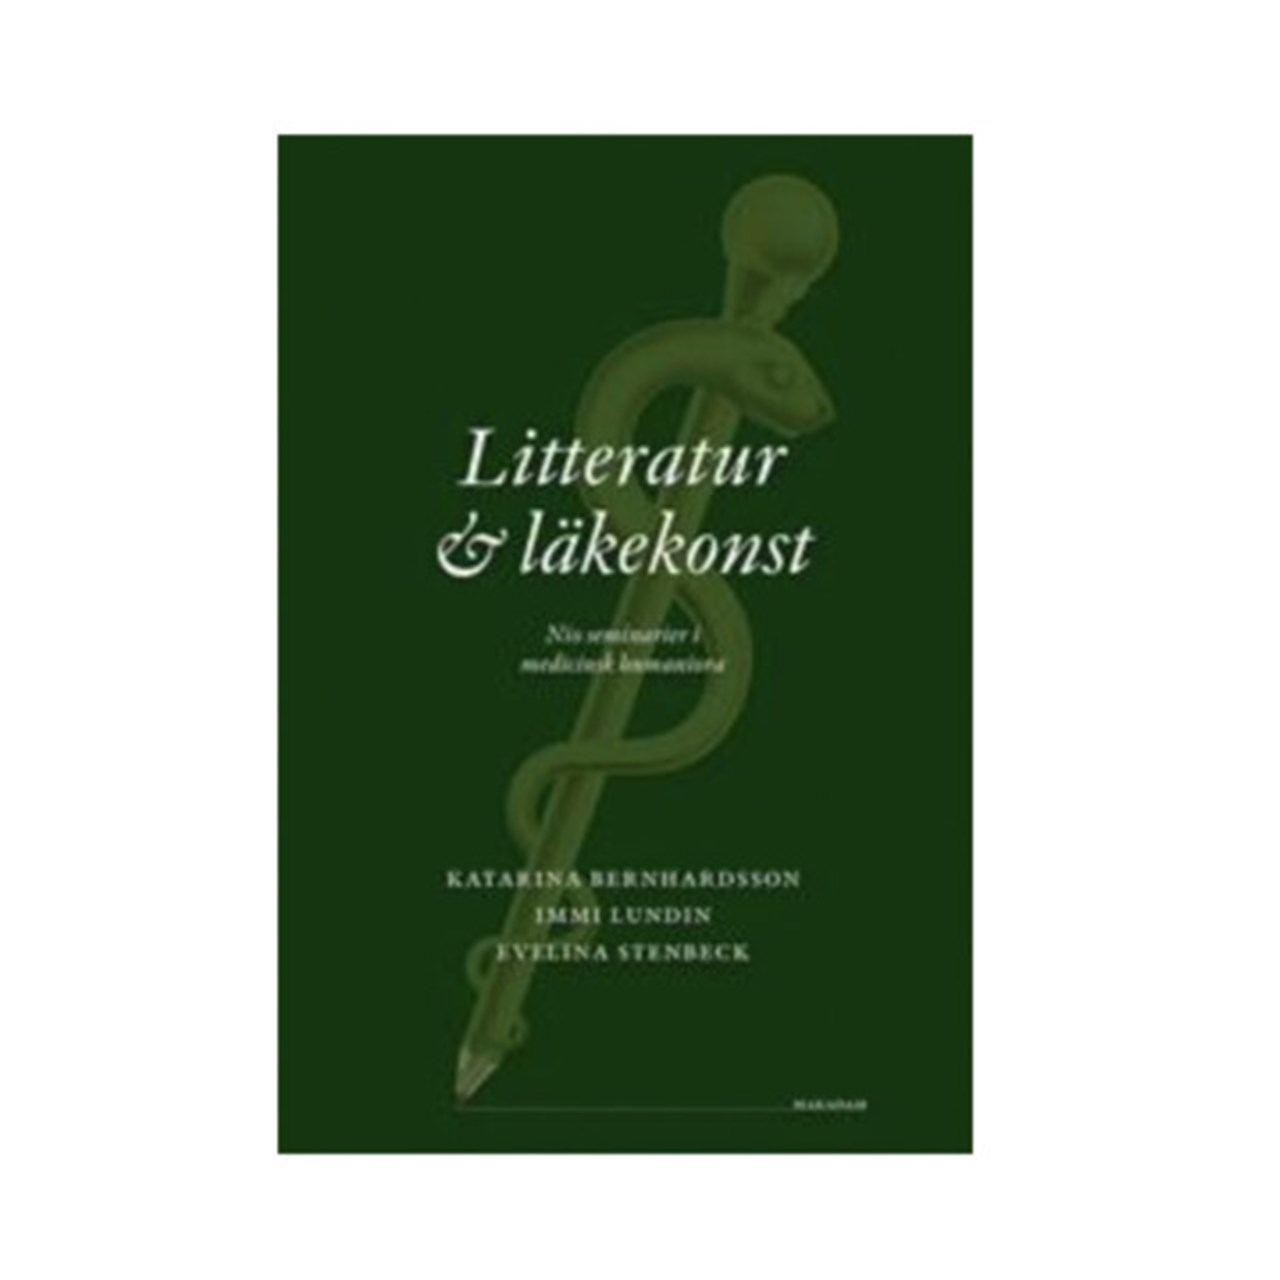 Bild på boken Boken Litteratur och läkekonst: Nio seminarier i medicinsk humaniora